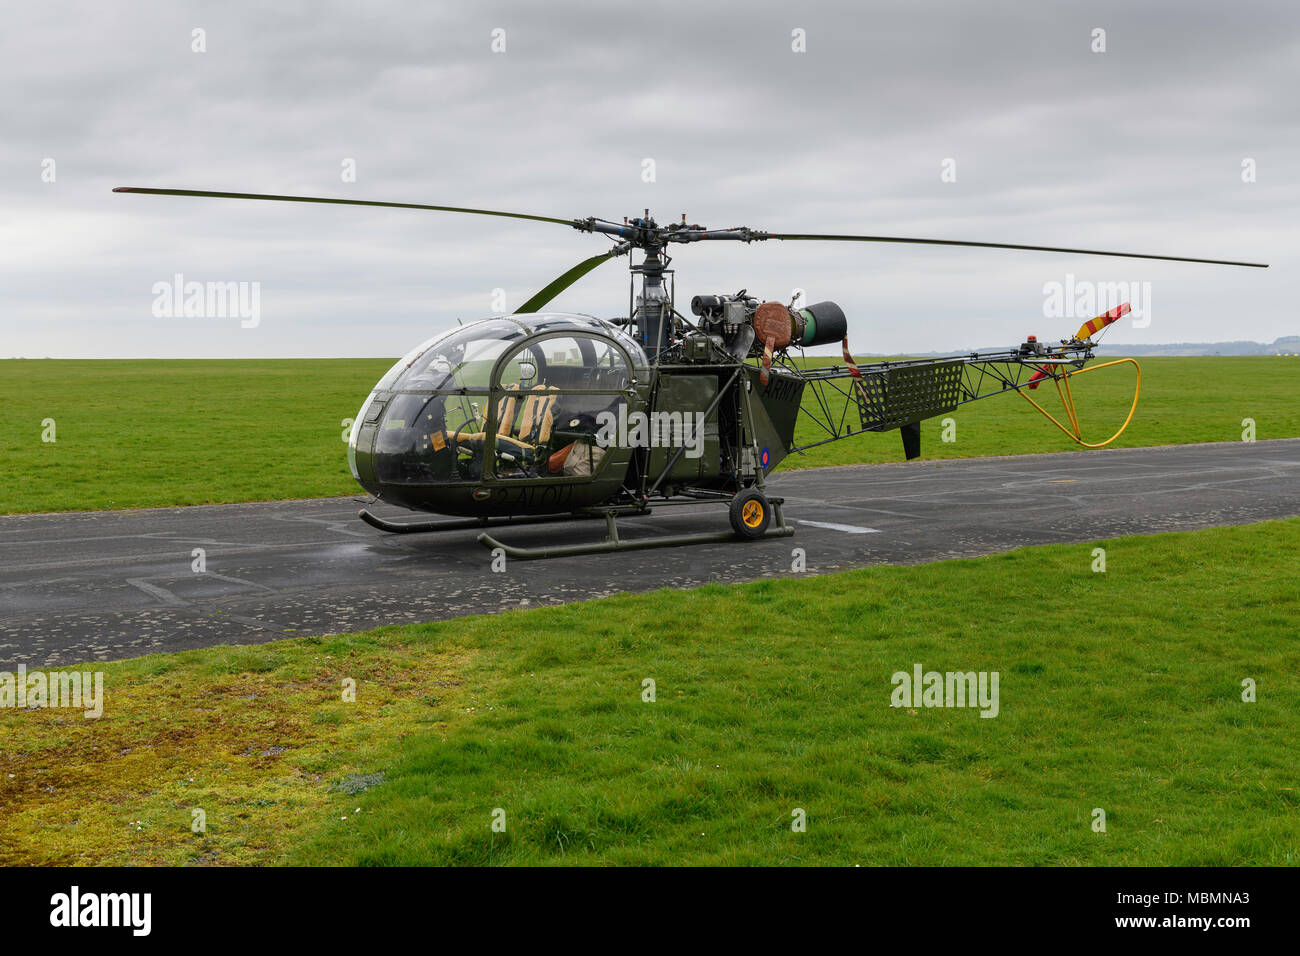 Altaya 1:72 Elicottero Helicopter SINCASE SE-313 ALOUETTE II FRANCE Ixo 37 